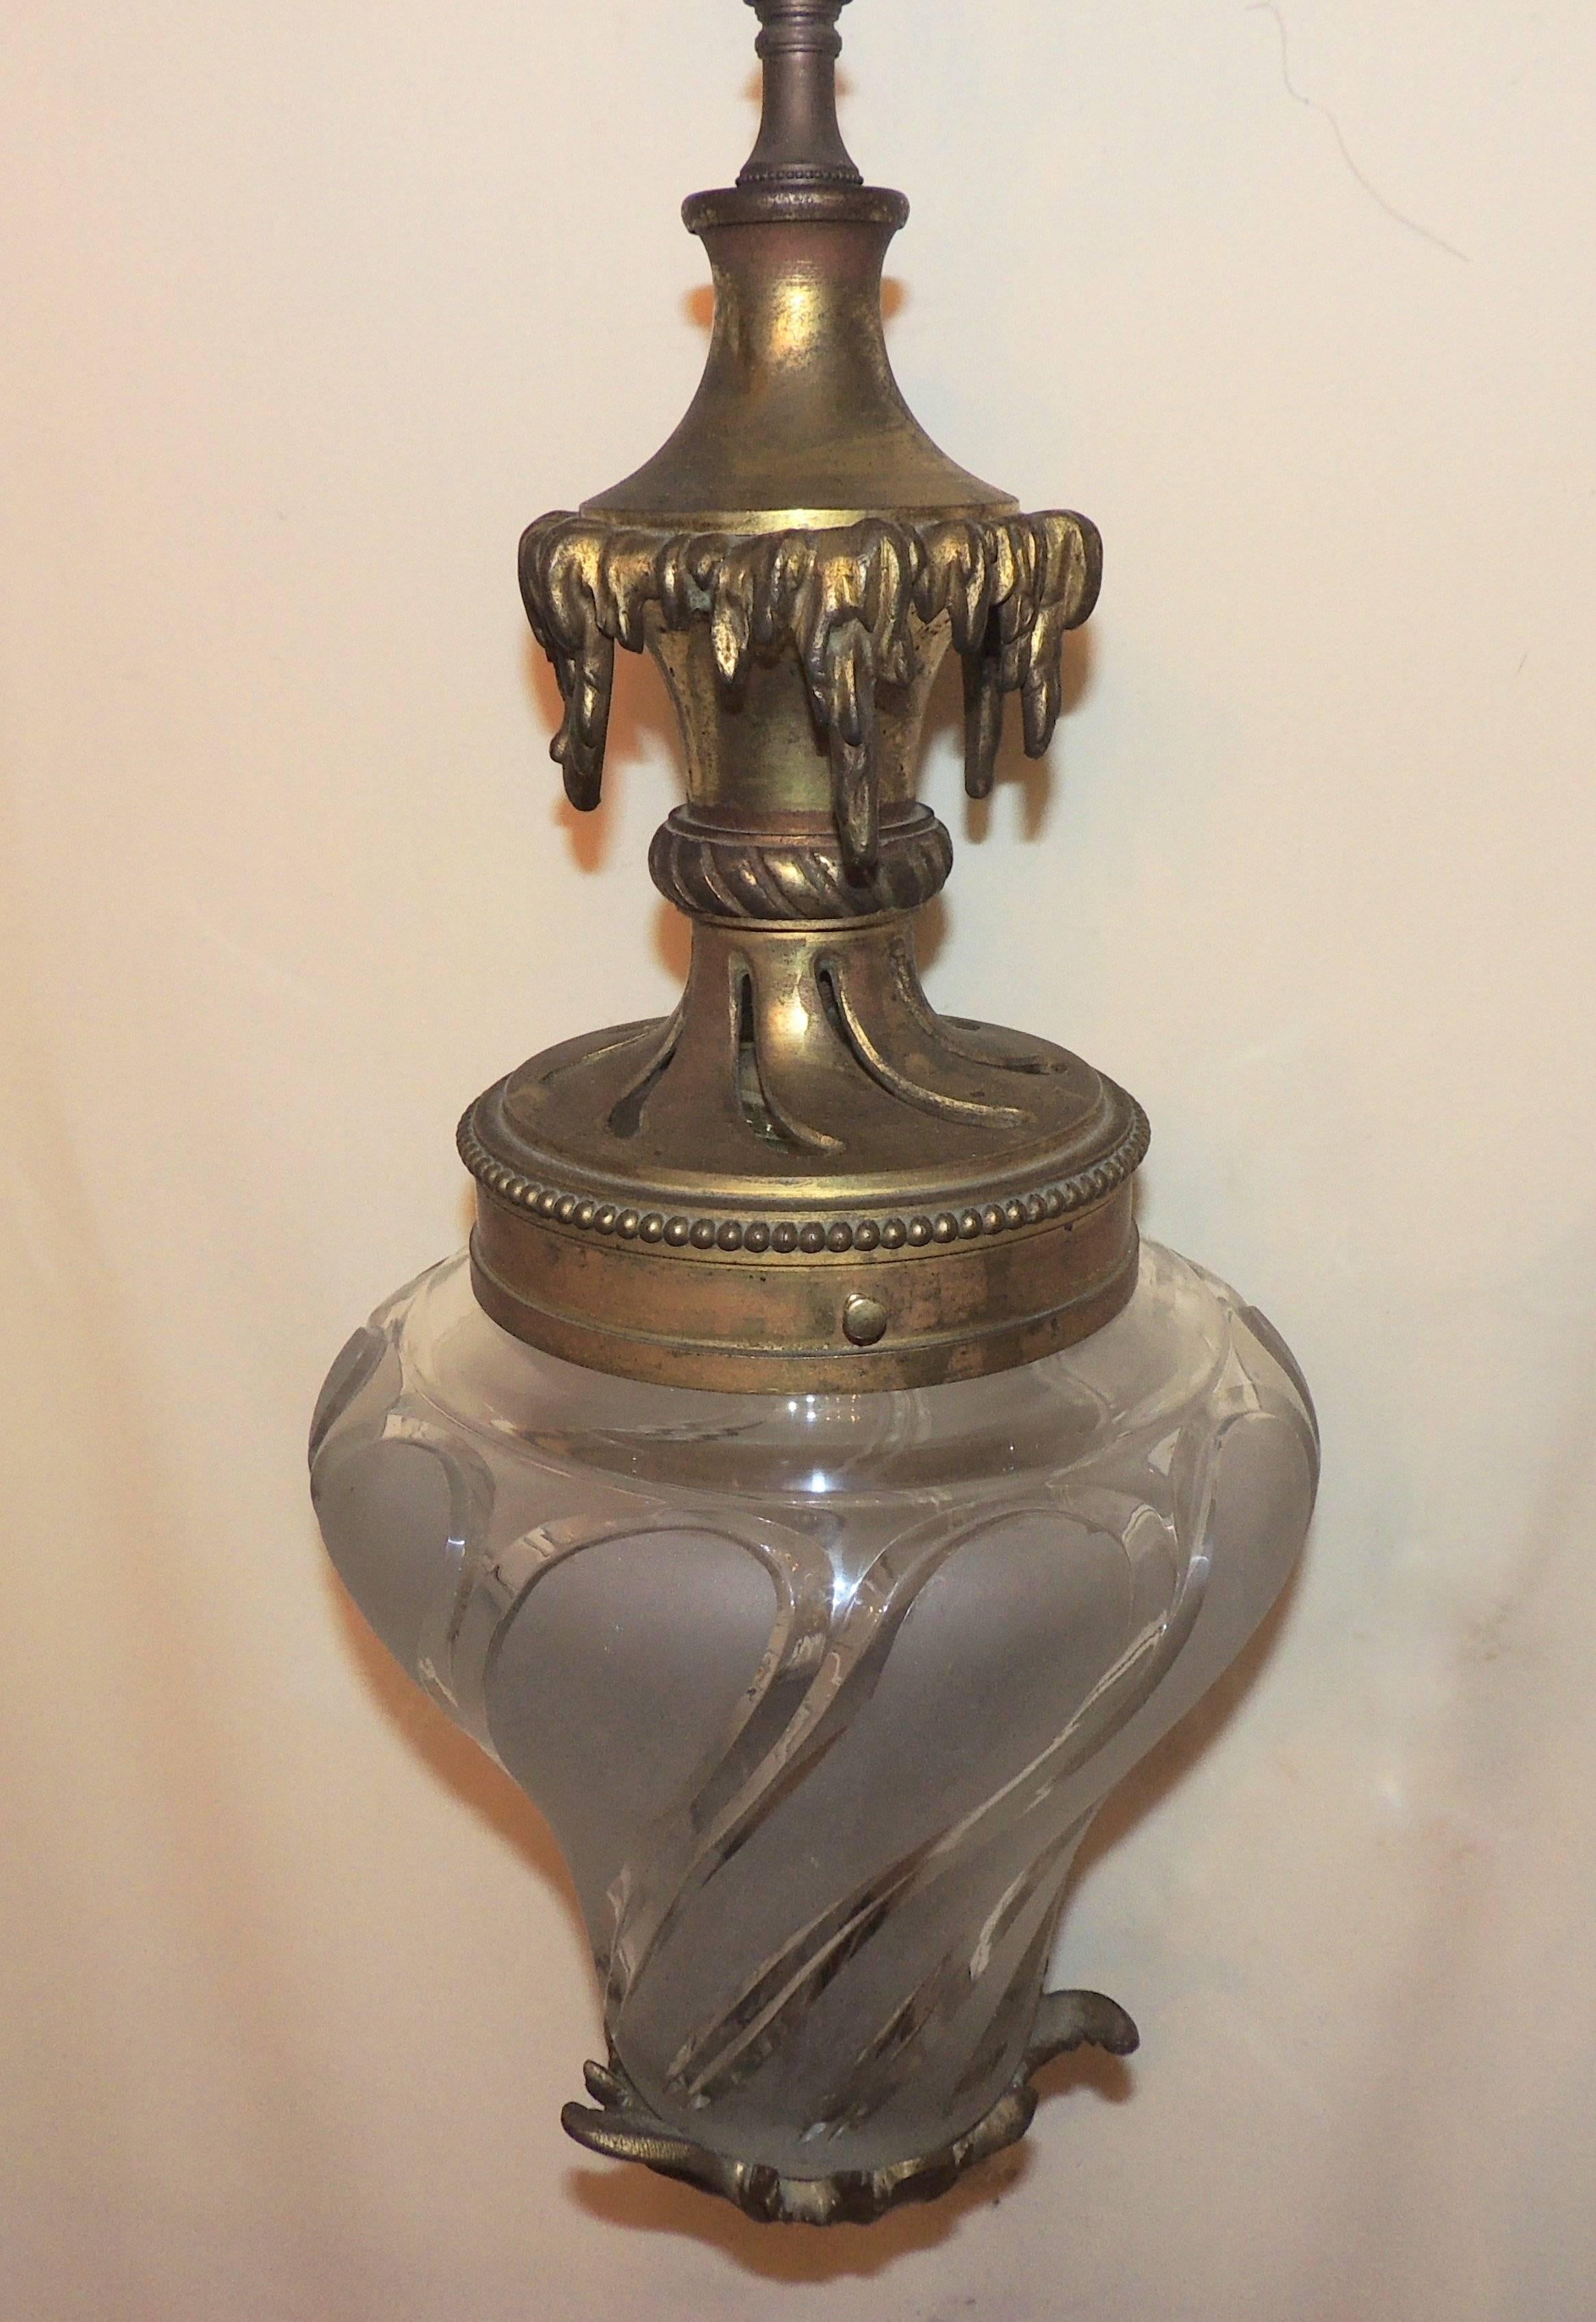 Wunderschöne filigrane französische Bronzelaterne mit abgeschrägtem Milchglas.

Maße: 22